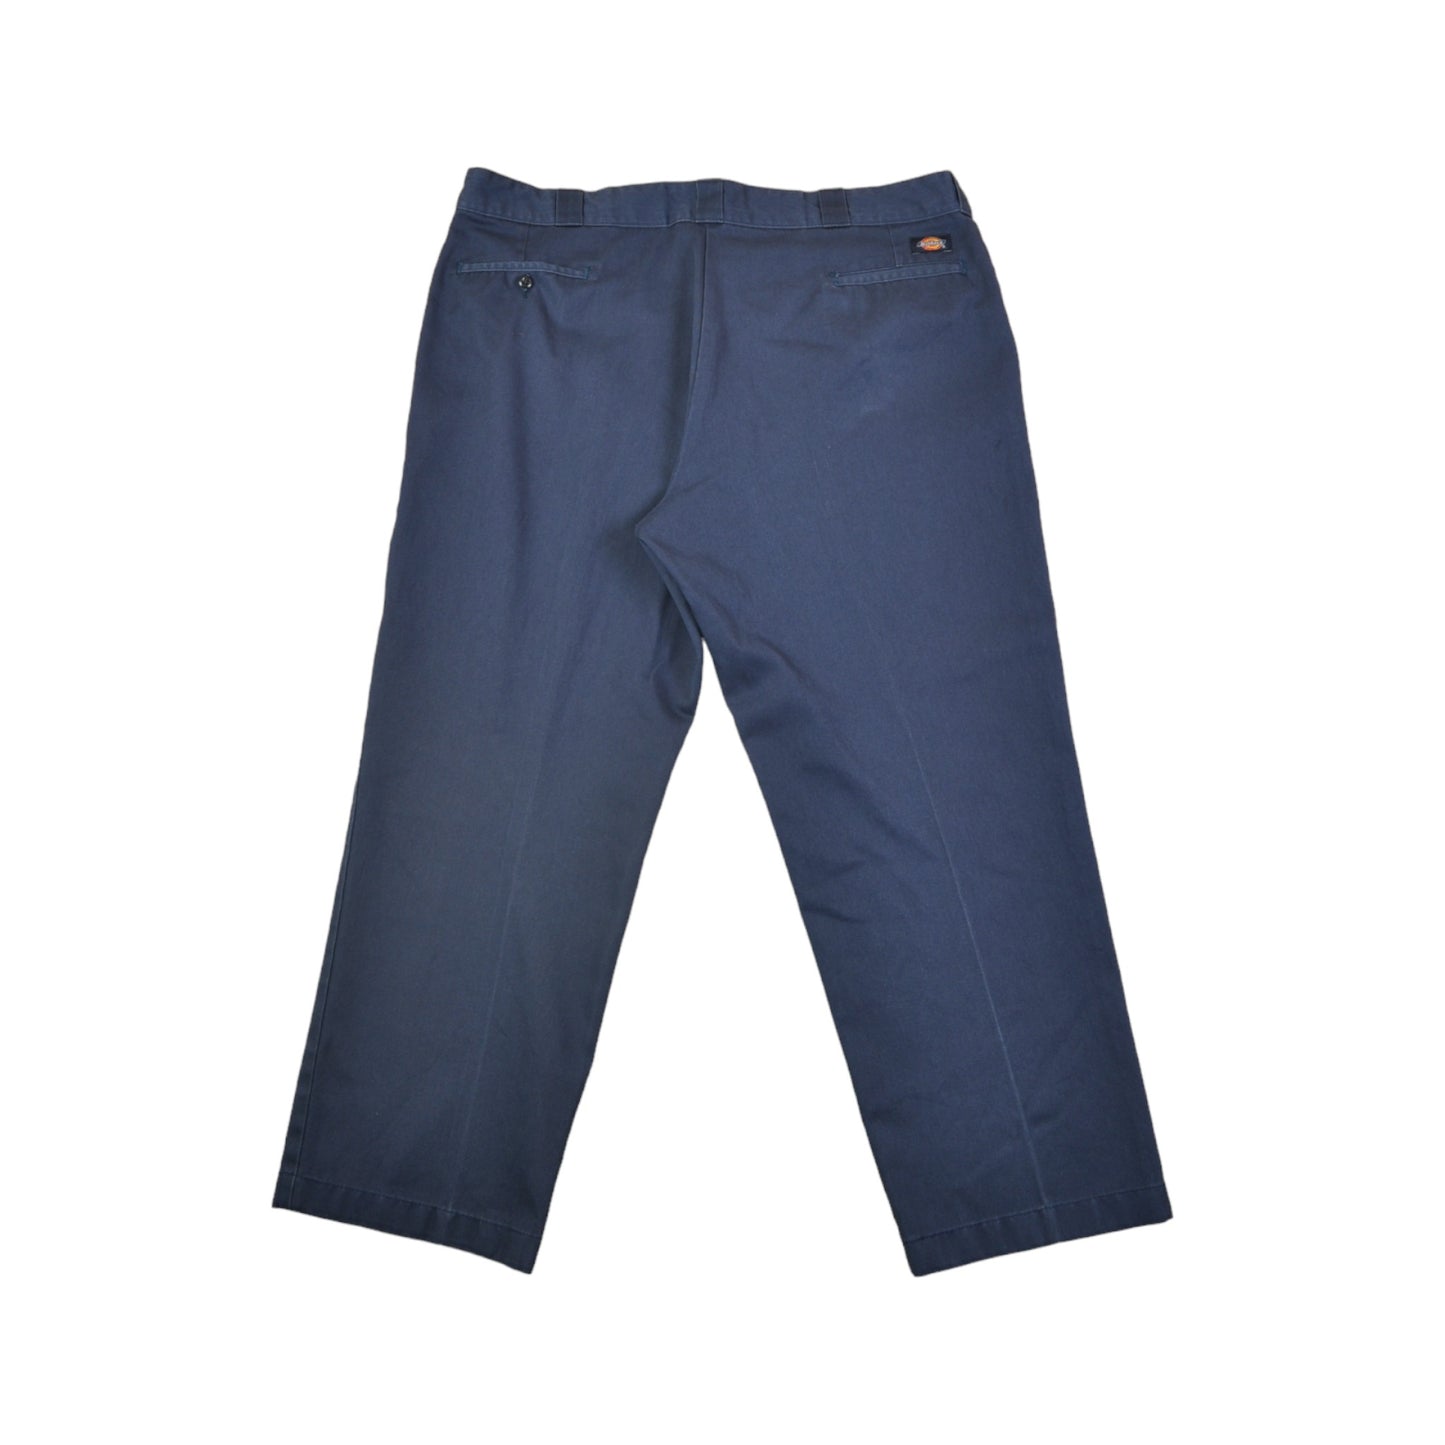 Vintage Dickies 874 Workwear Pants Straight Leg Navy W48 L27